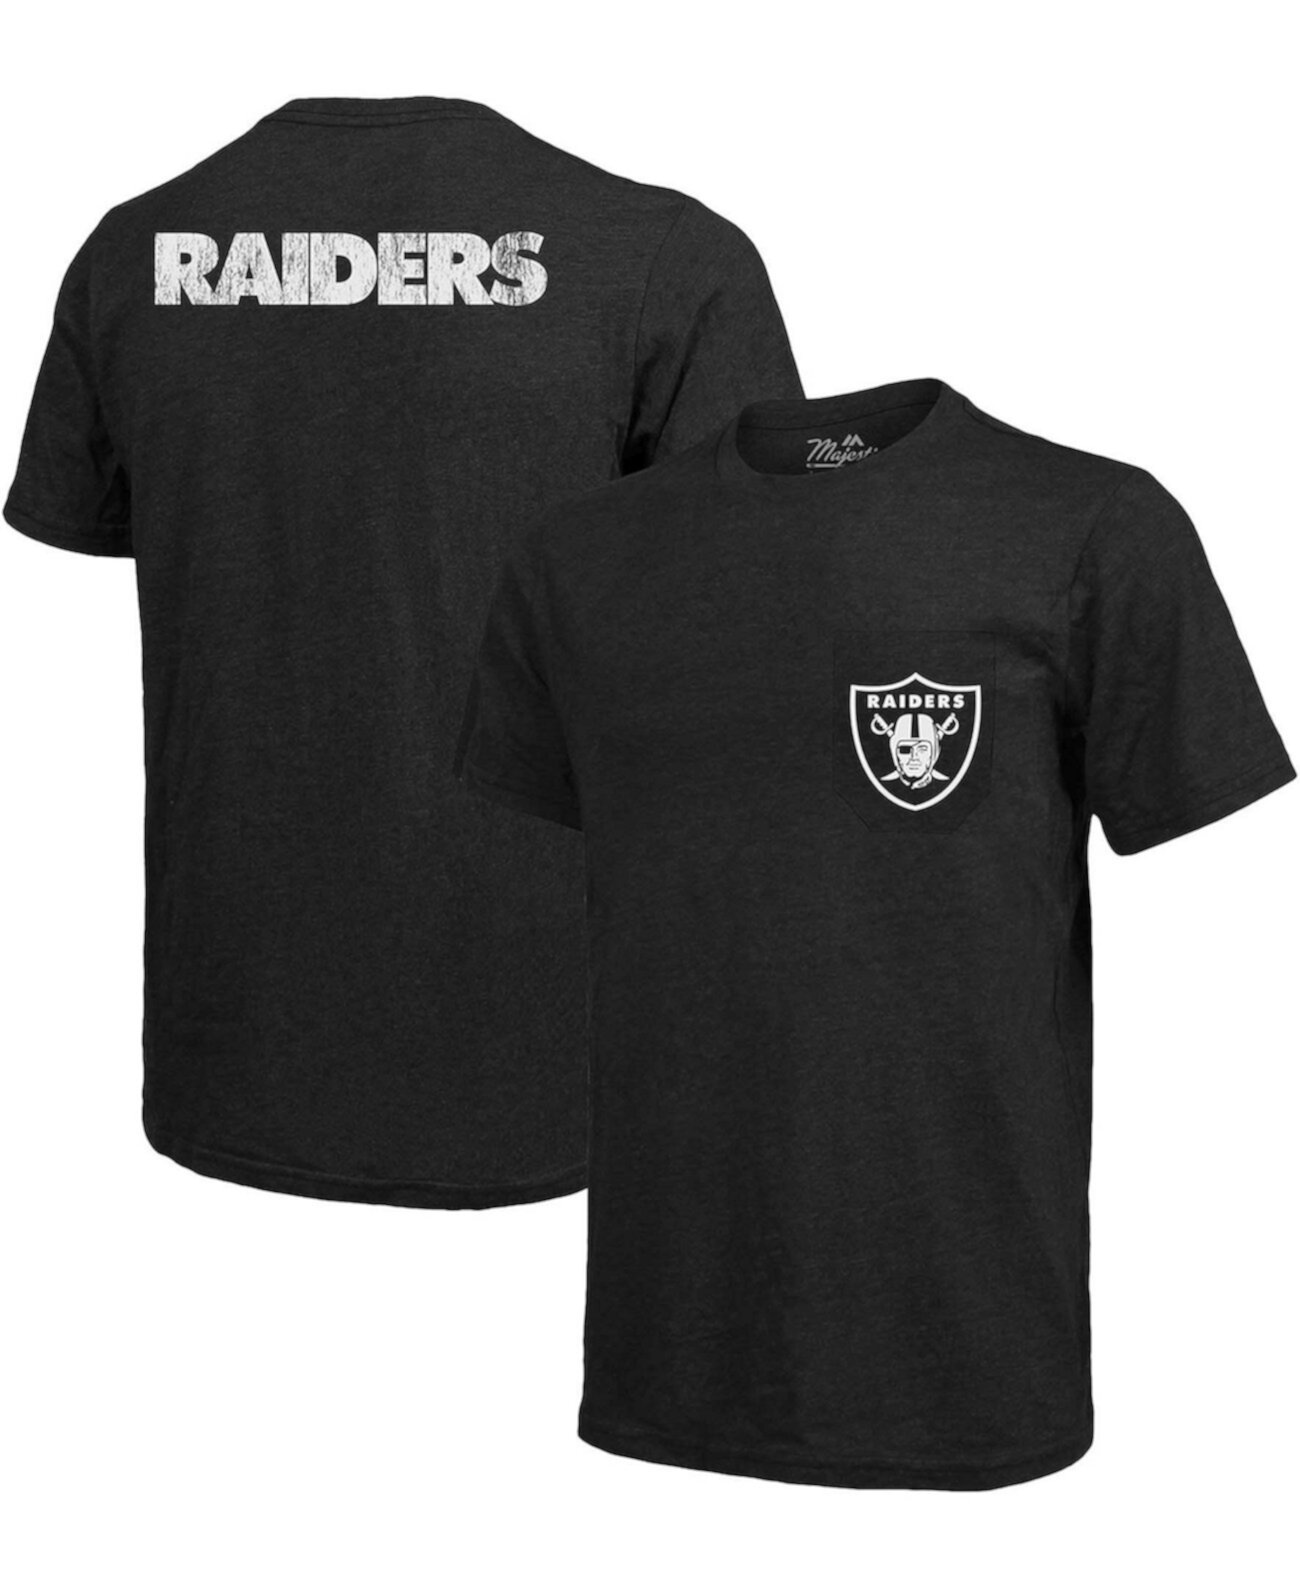 Мужская футболка Las Vegas Raiders с карманами из трех частей - Черный Majestic